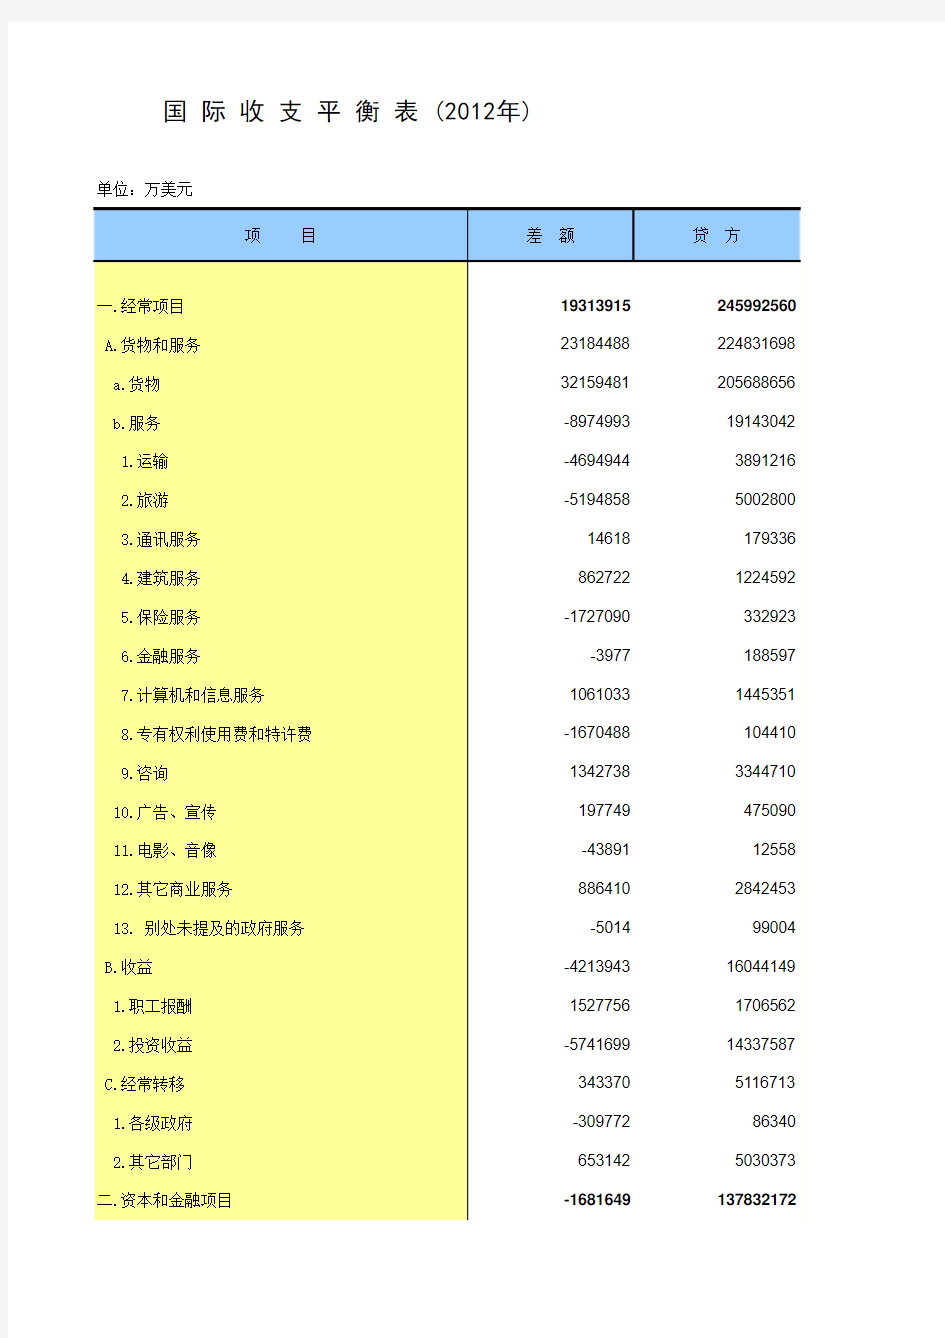 中国统计年鉴2013国际收支平衡表 (2012年)